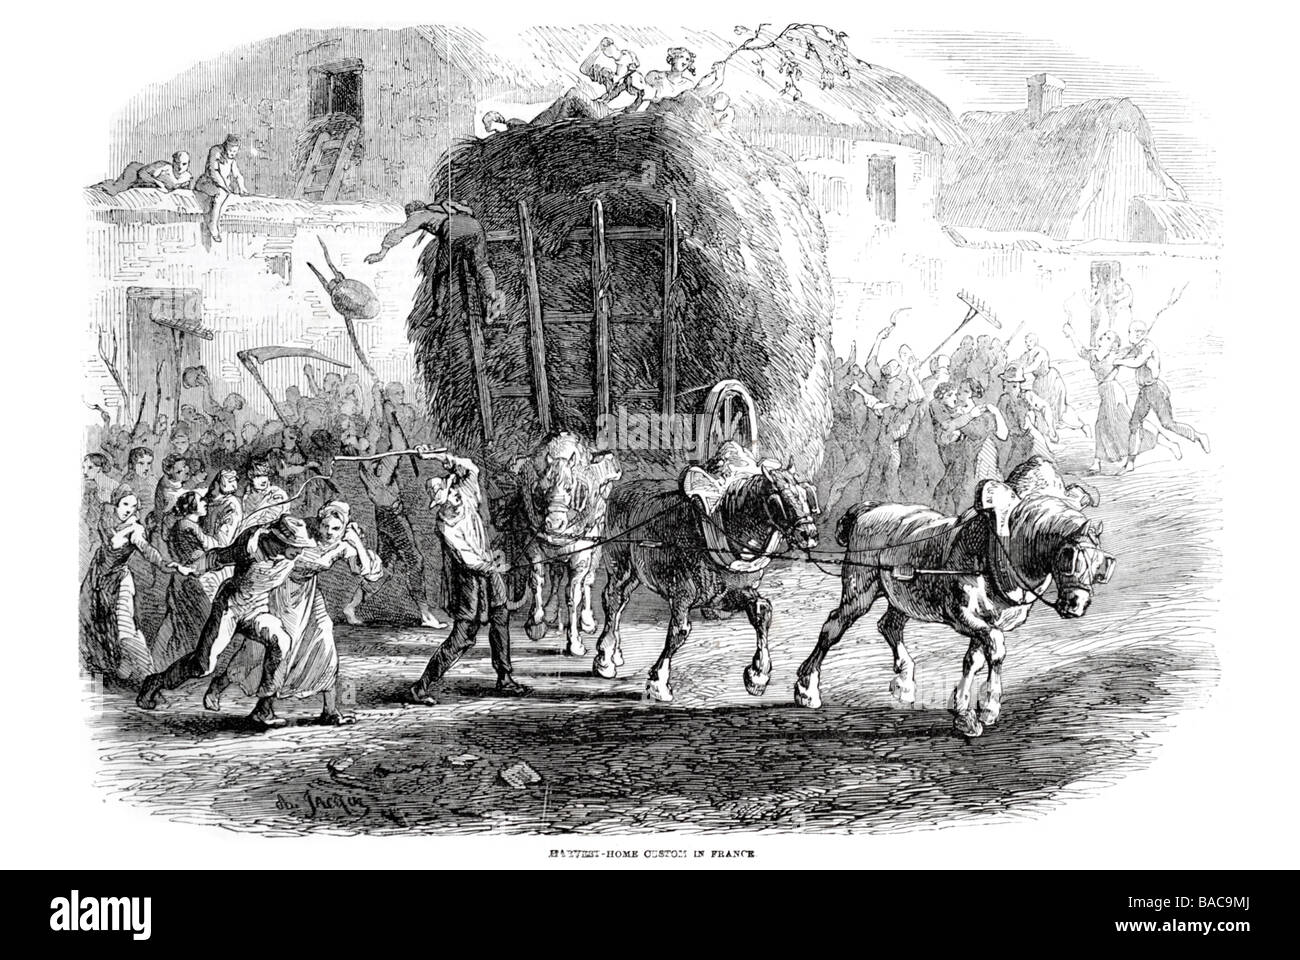 harvest home custom in france 1854 horse cart straw hay whip scythe sickle reaper Stock Photo